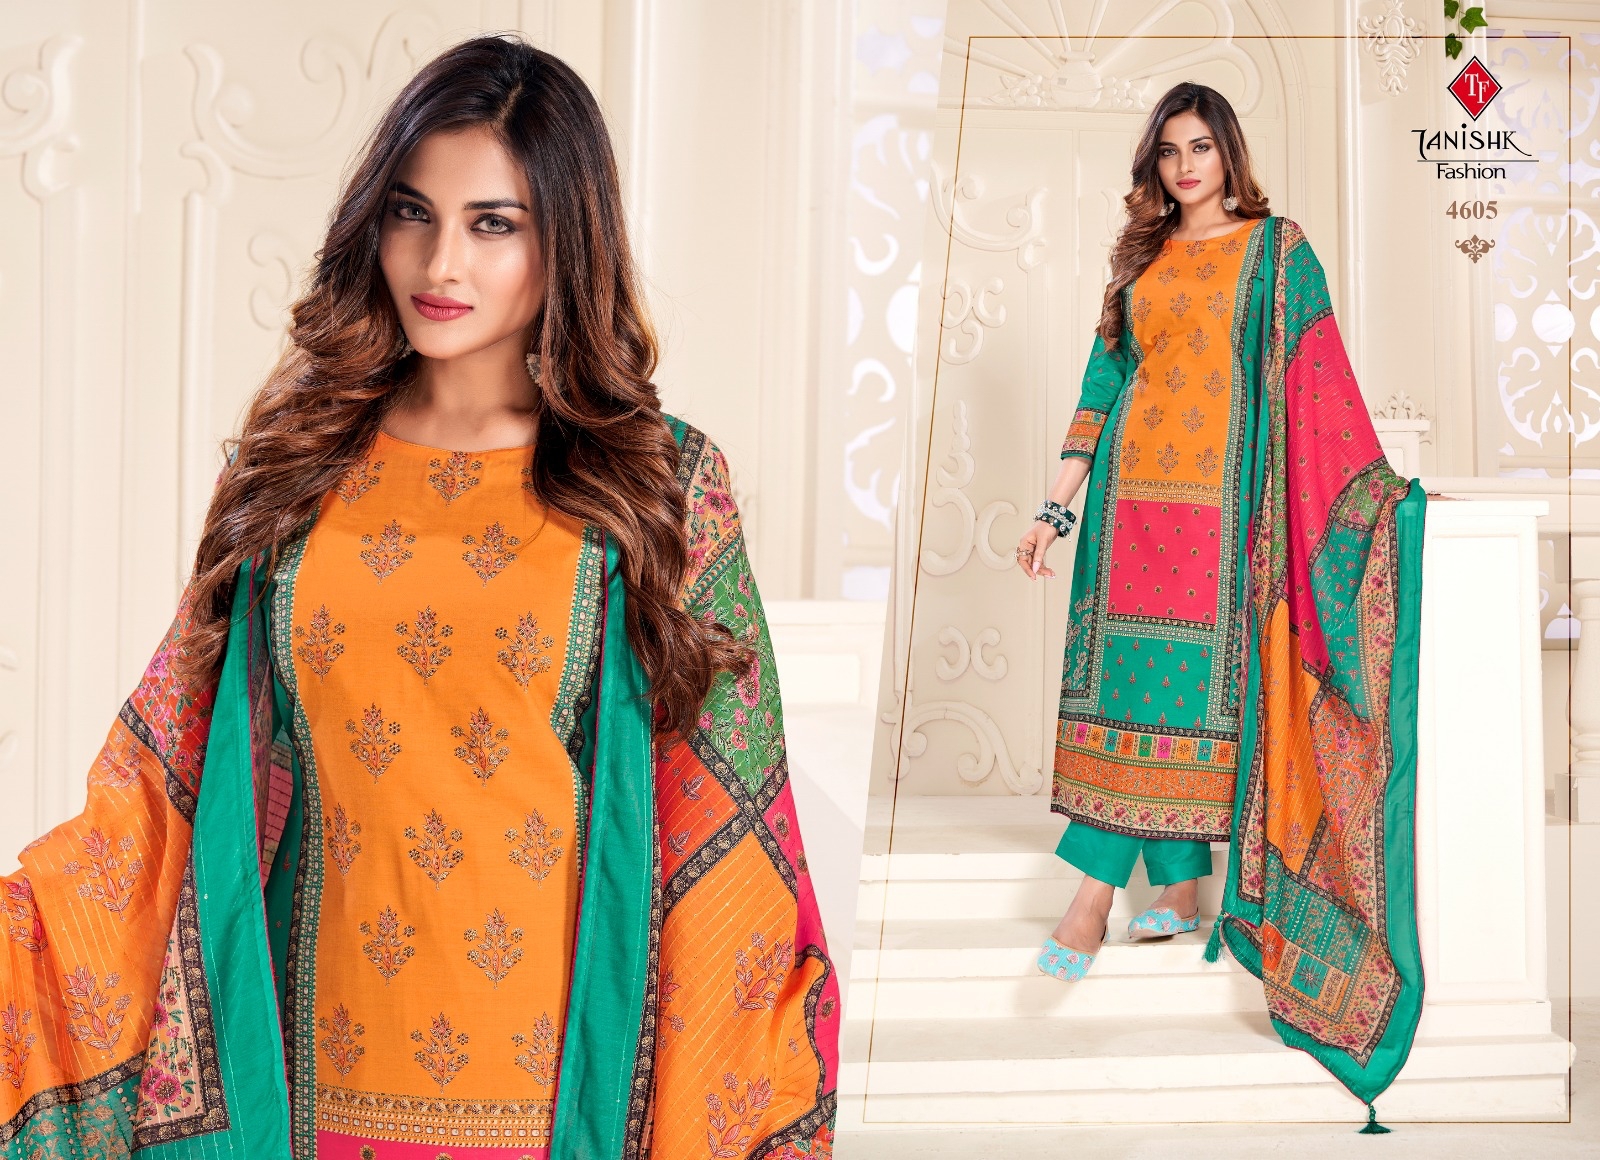 Tanishak Fashion Ek Punjabi Kudi 4605